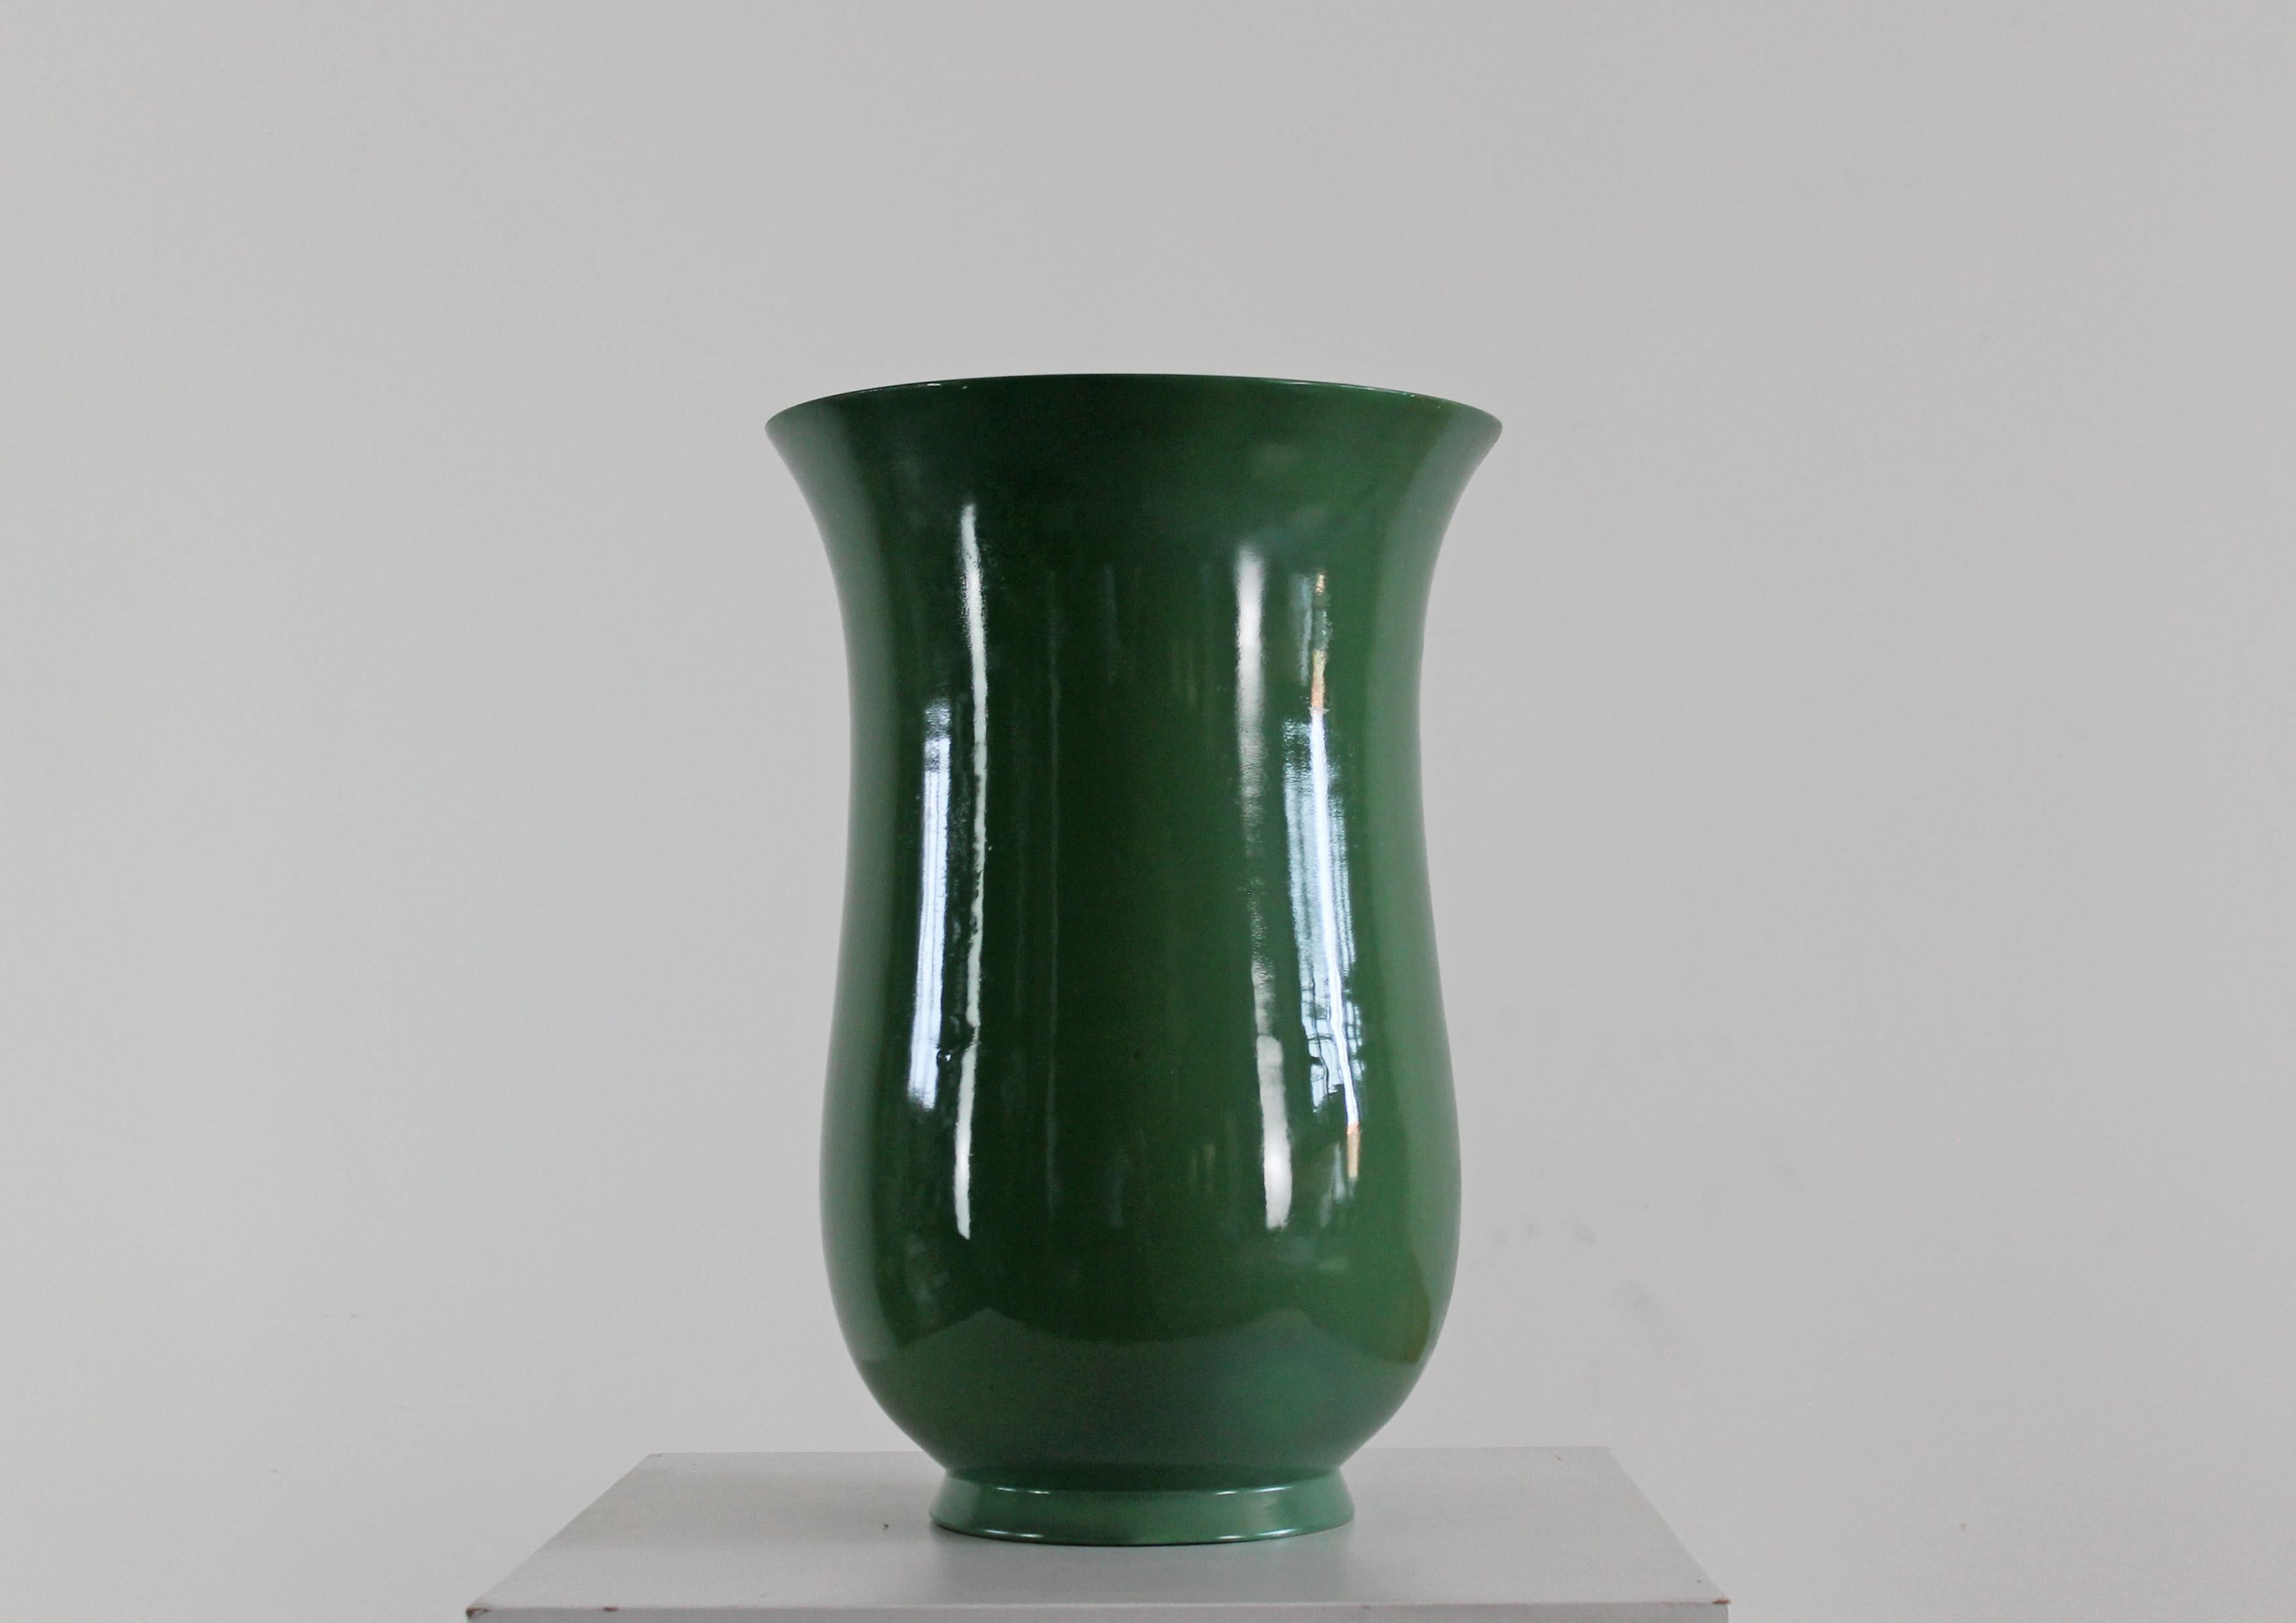 Große Vase aus grüner Keramik, entworfen von dem italienischen Designer Gio Ponti und hergestellt von Richard Ginori zwischen den 1930er und 1940er Jahren. 

Bei diesem Stück wurde die Keramik mit einer eleganten und raffinierten, ausladenden Form